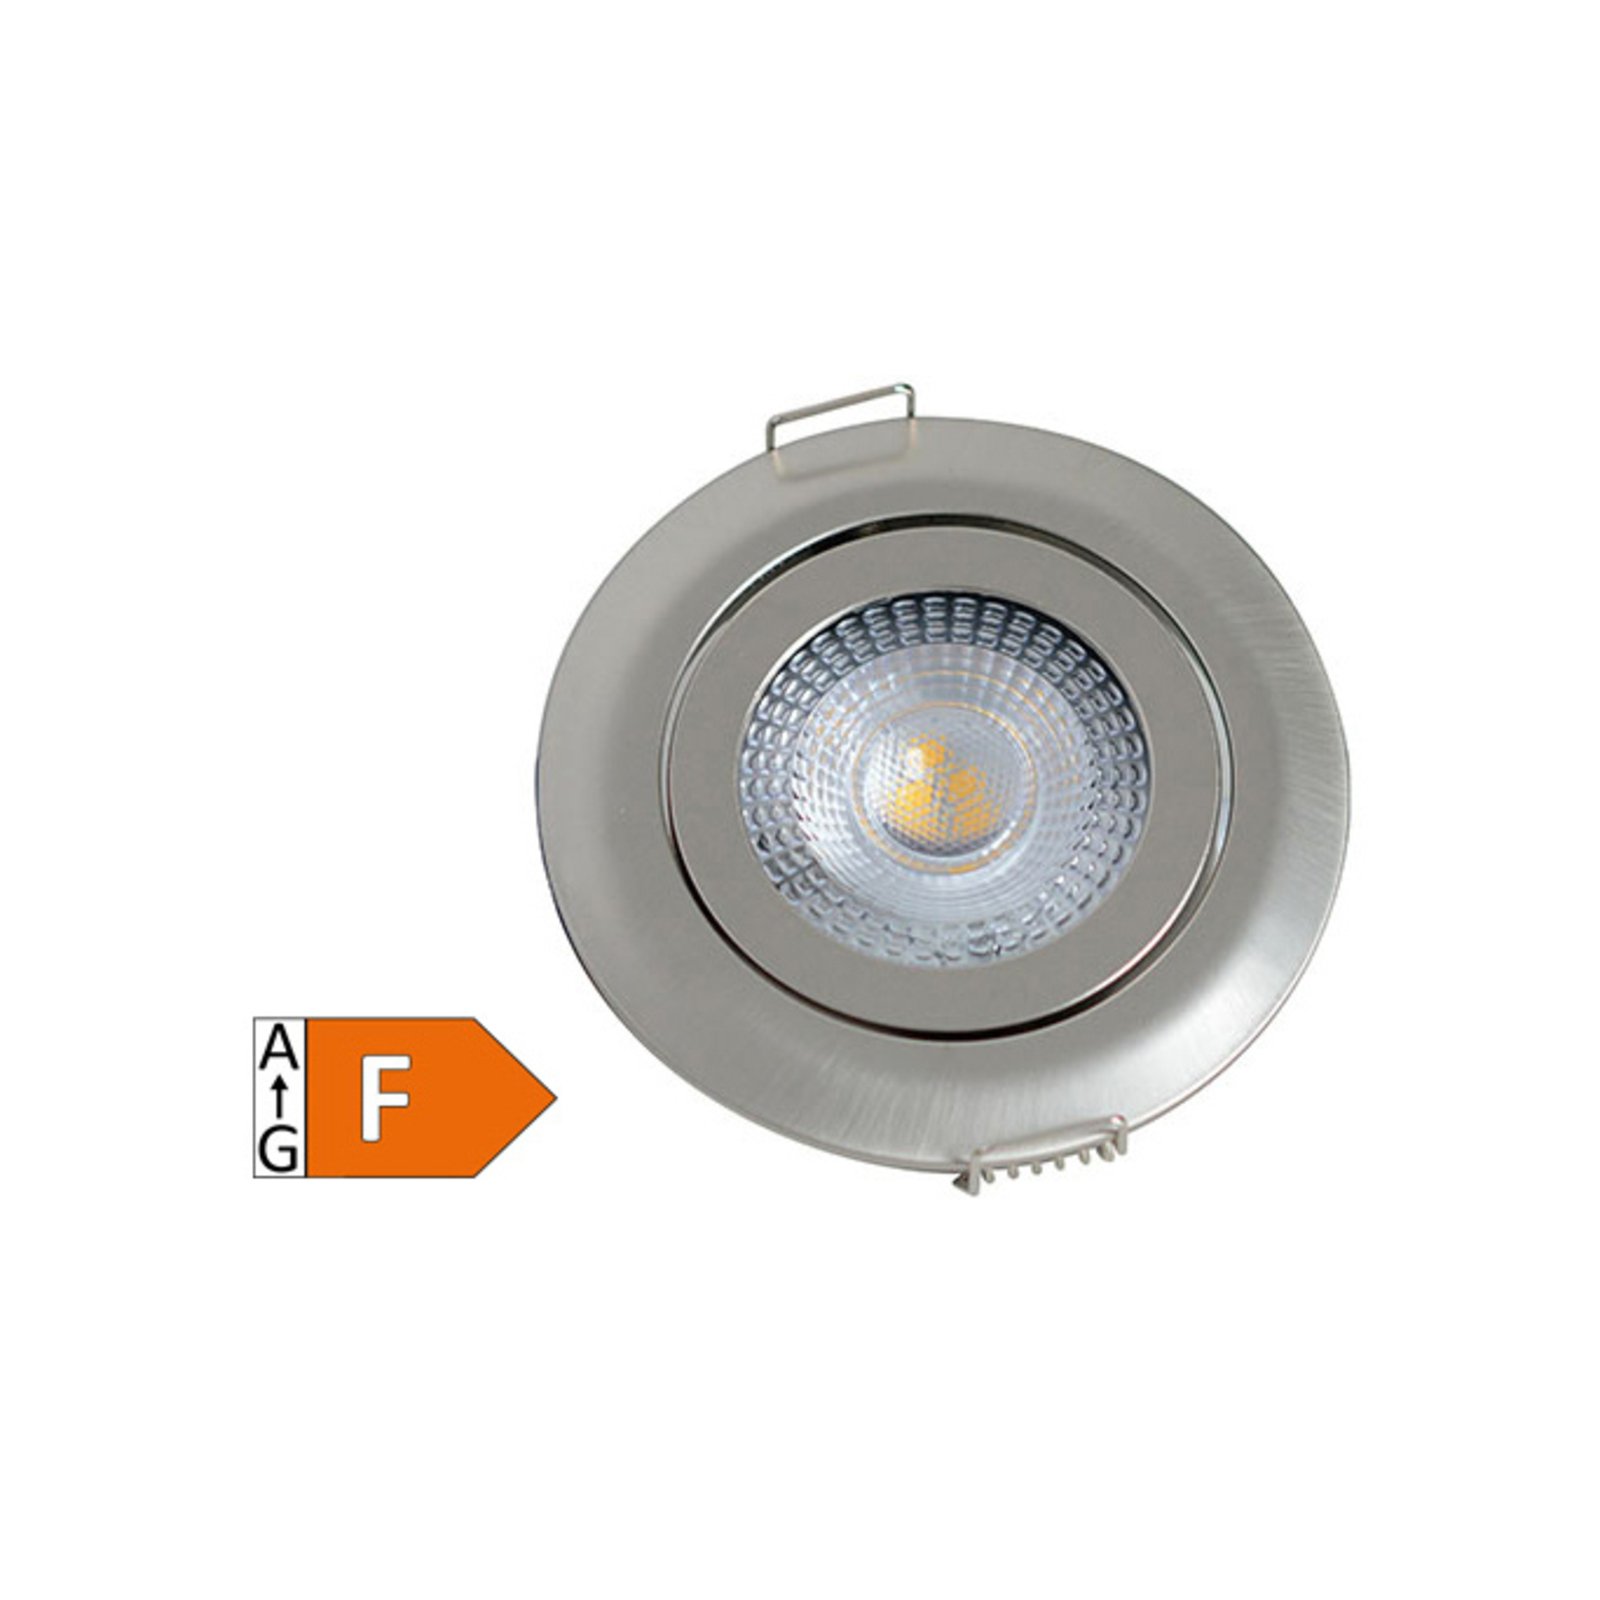 Holstein MS LED recessed light, IP20 40°, steel